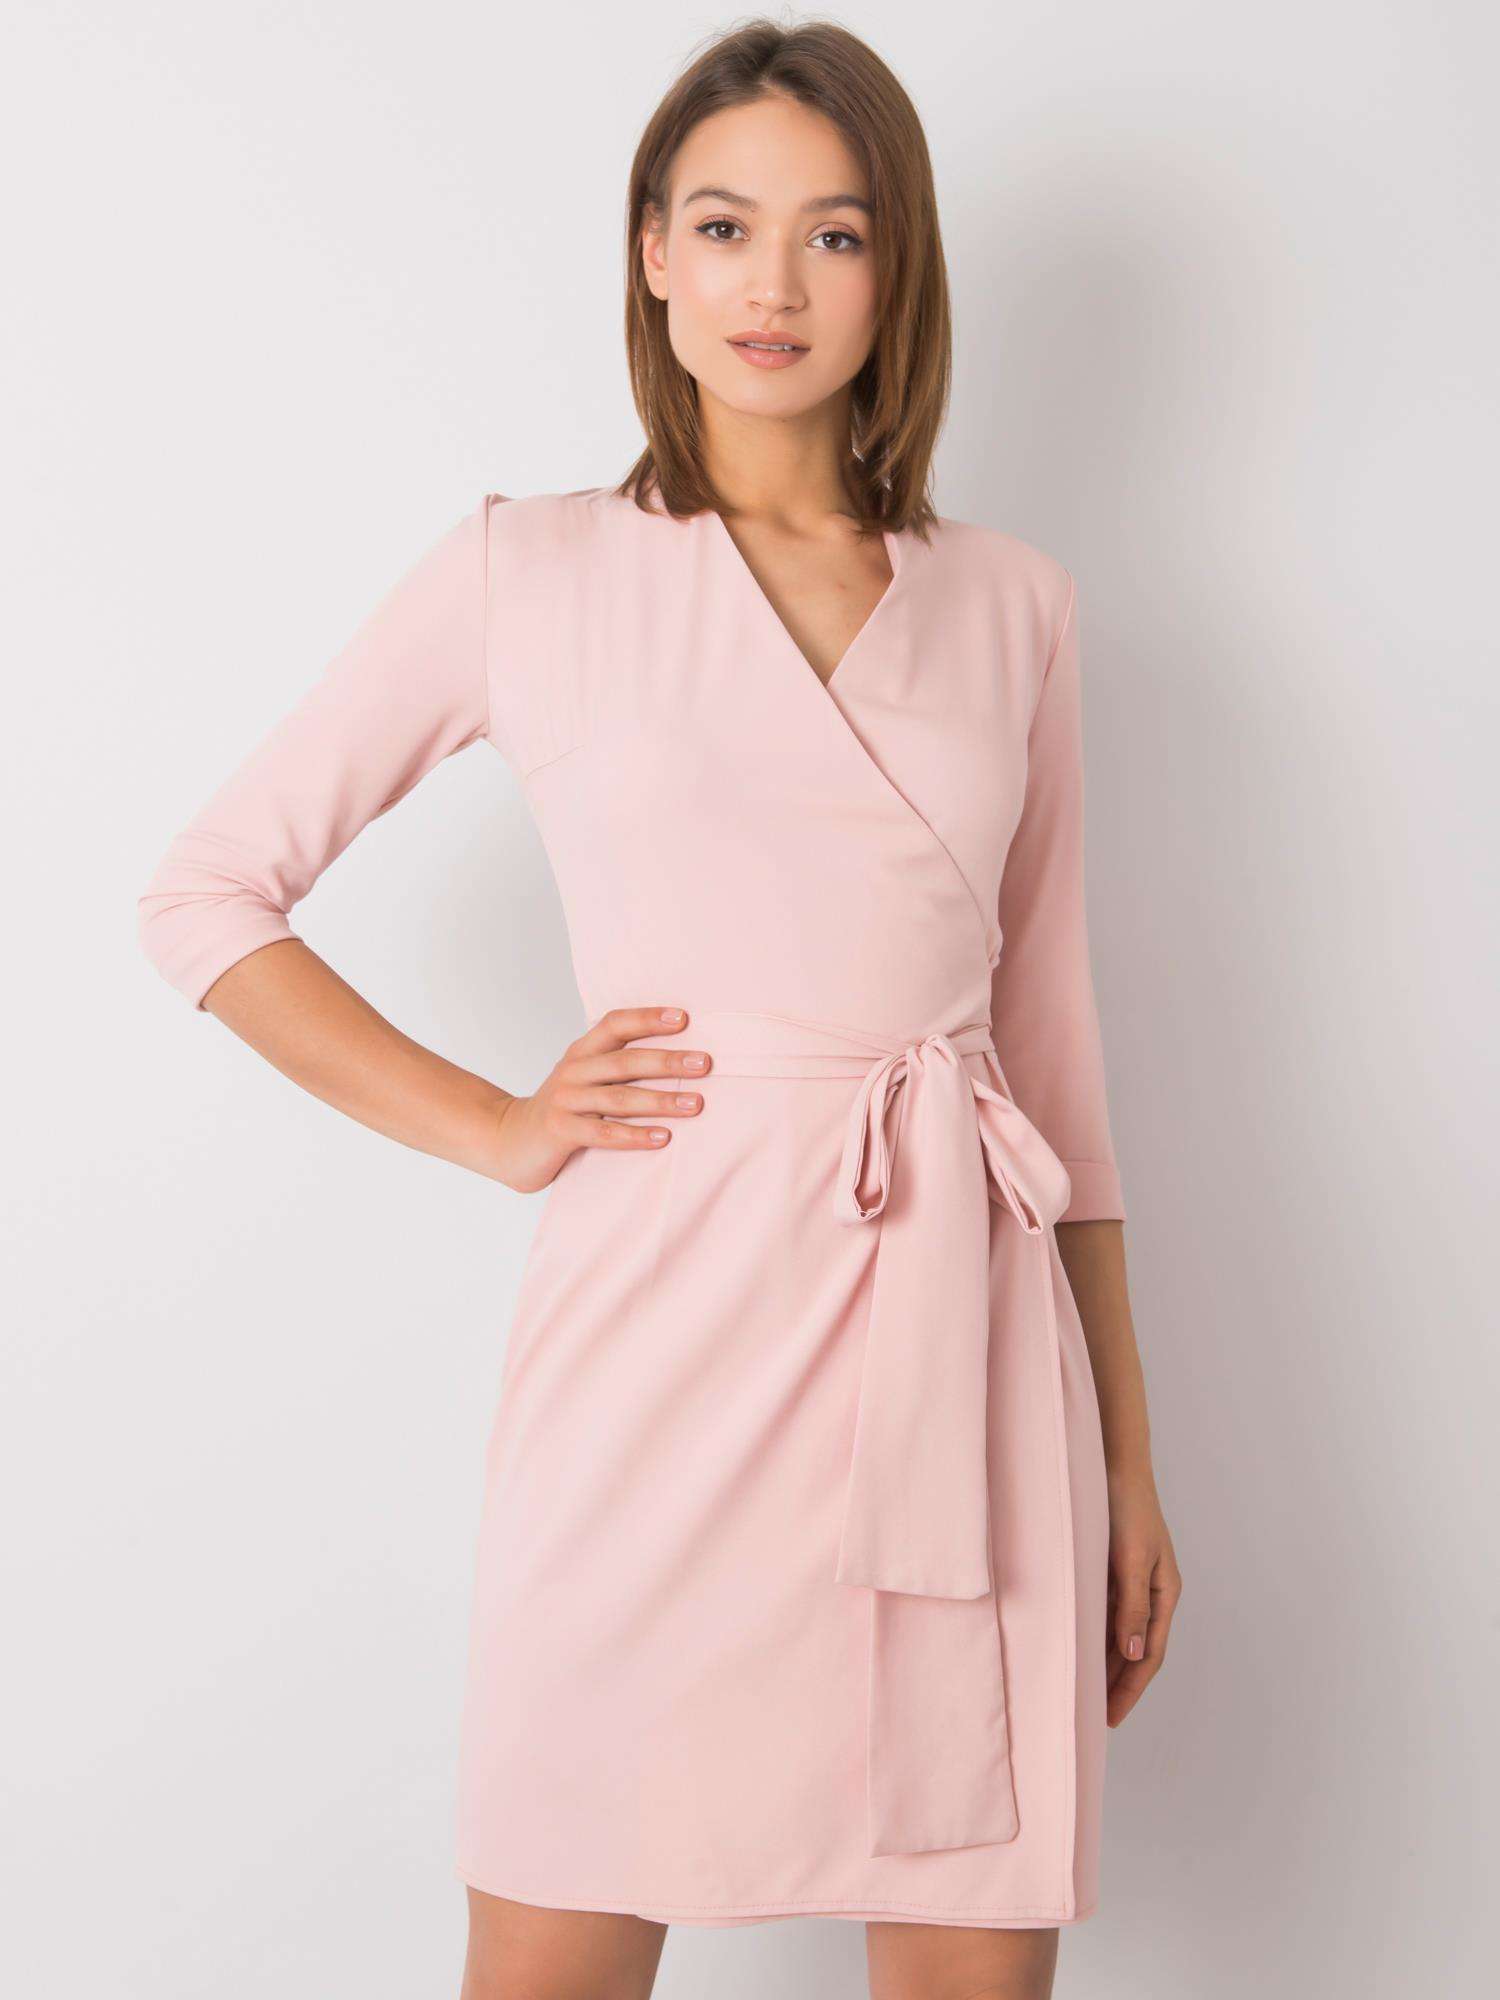 Světle růžové šaty s vázáním LK-SK-507665.17P-pink Velikost: 40